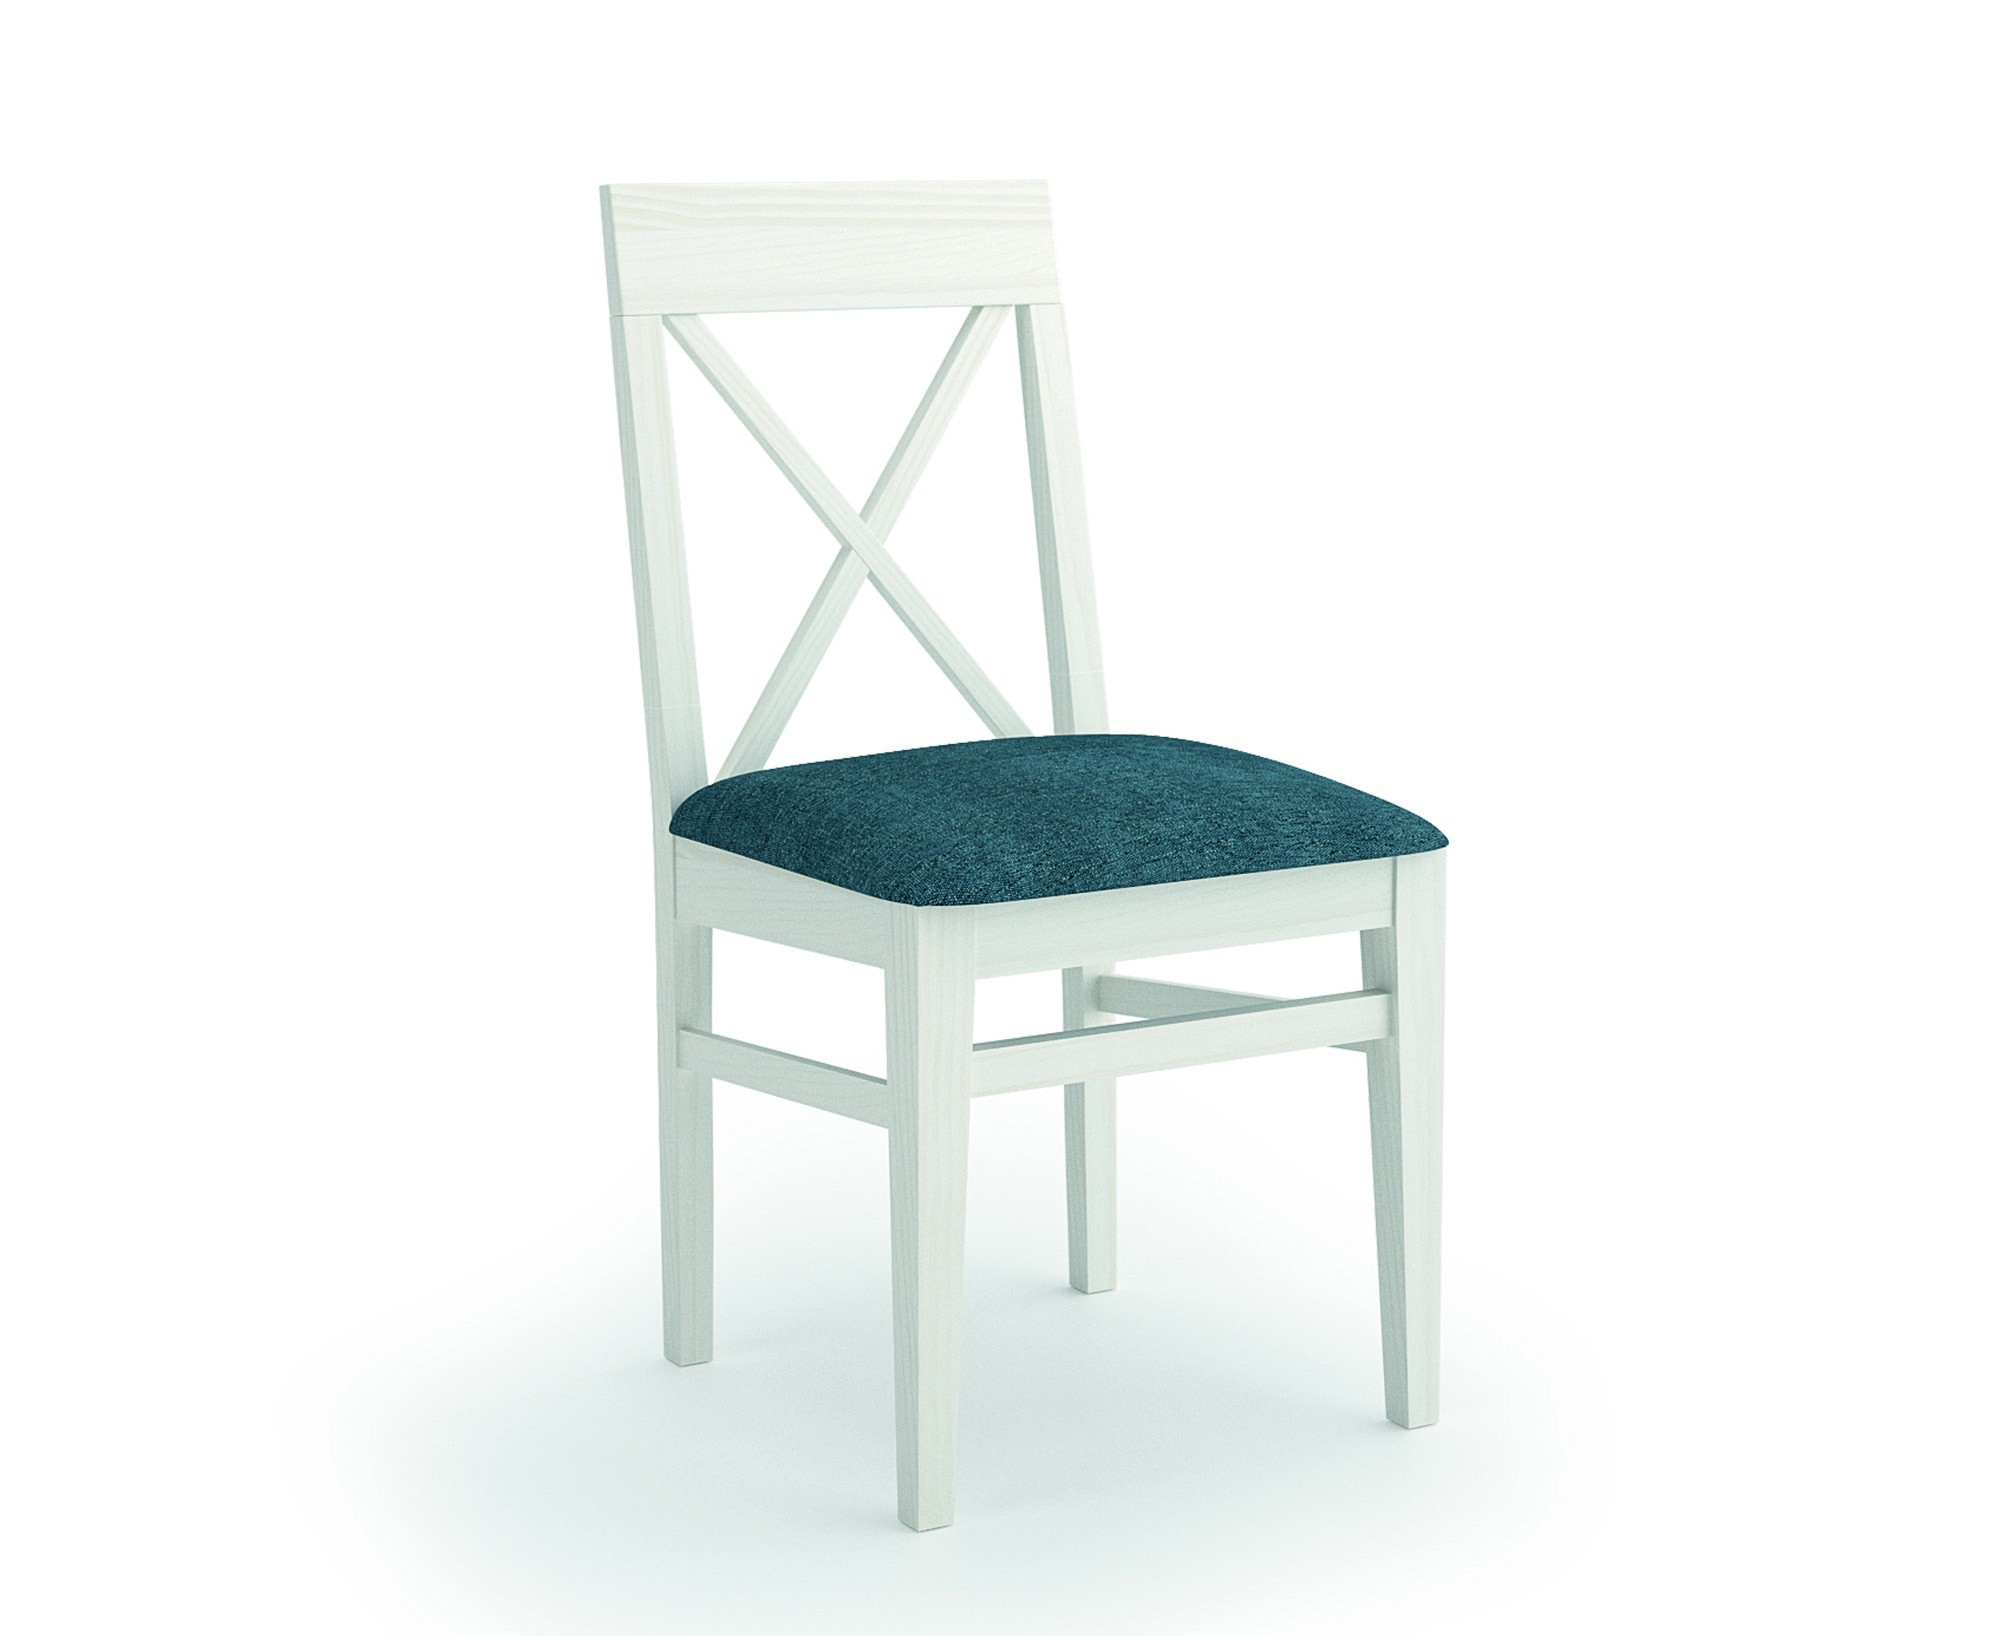 Estila Stylová jídelní židle Verona s masivními nohama a textilním čalouněním 90cm